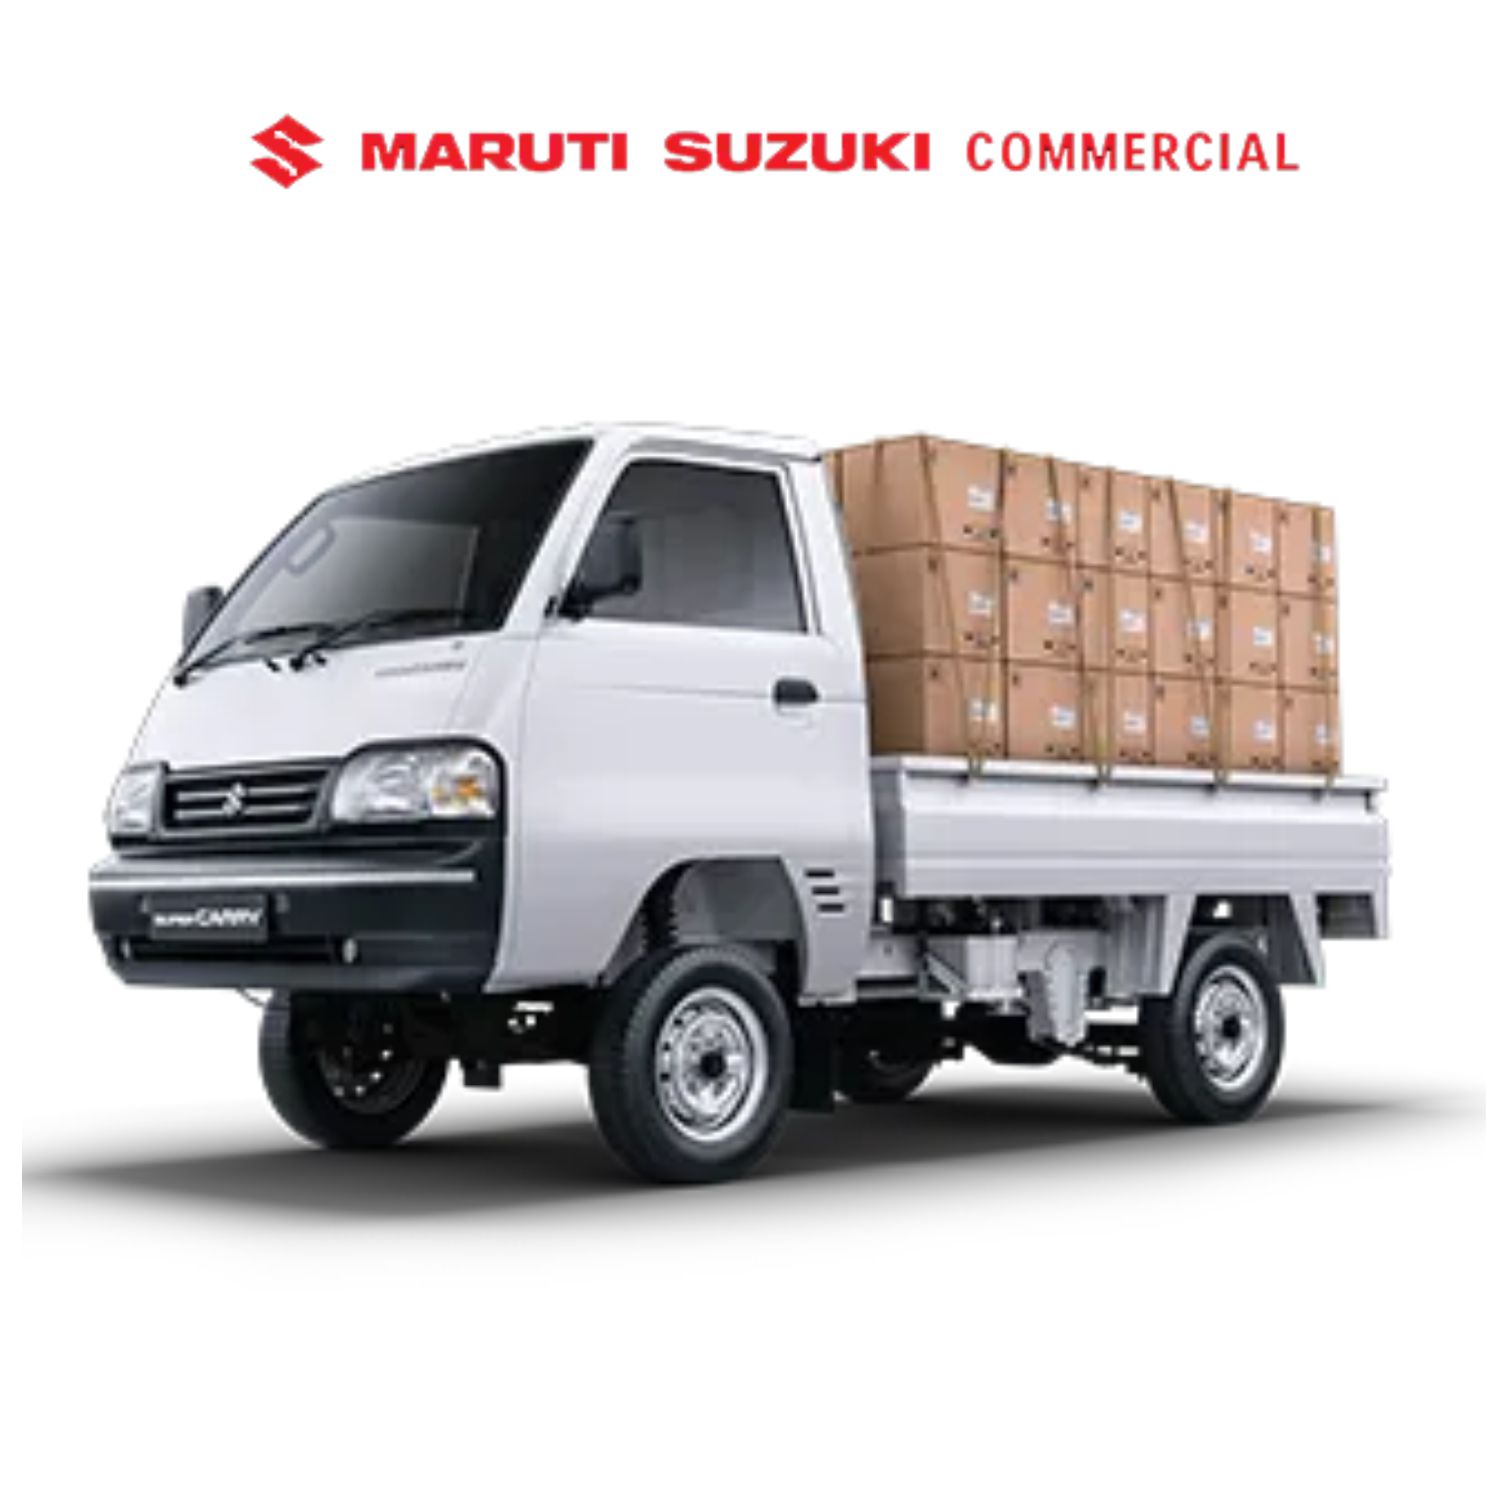 Maruti Suzuki Commercial